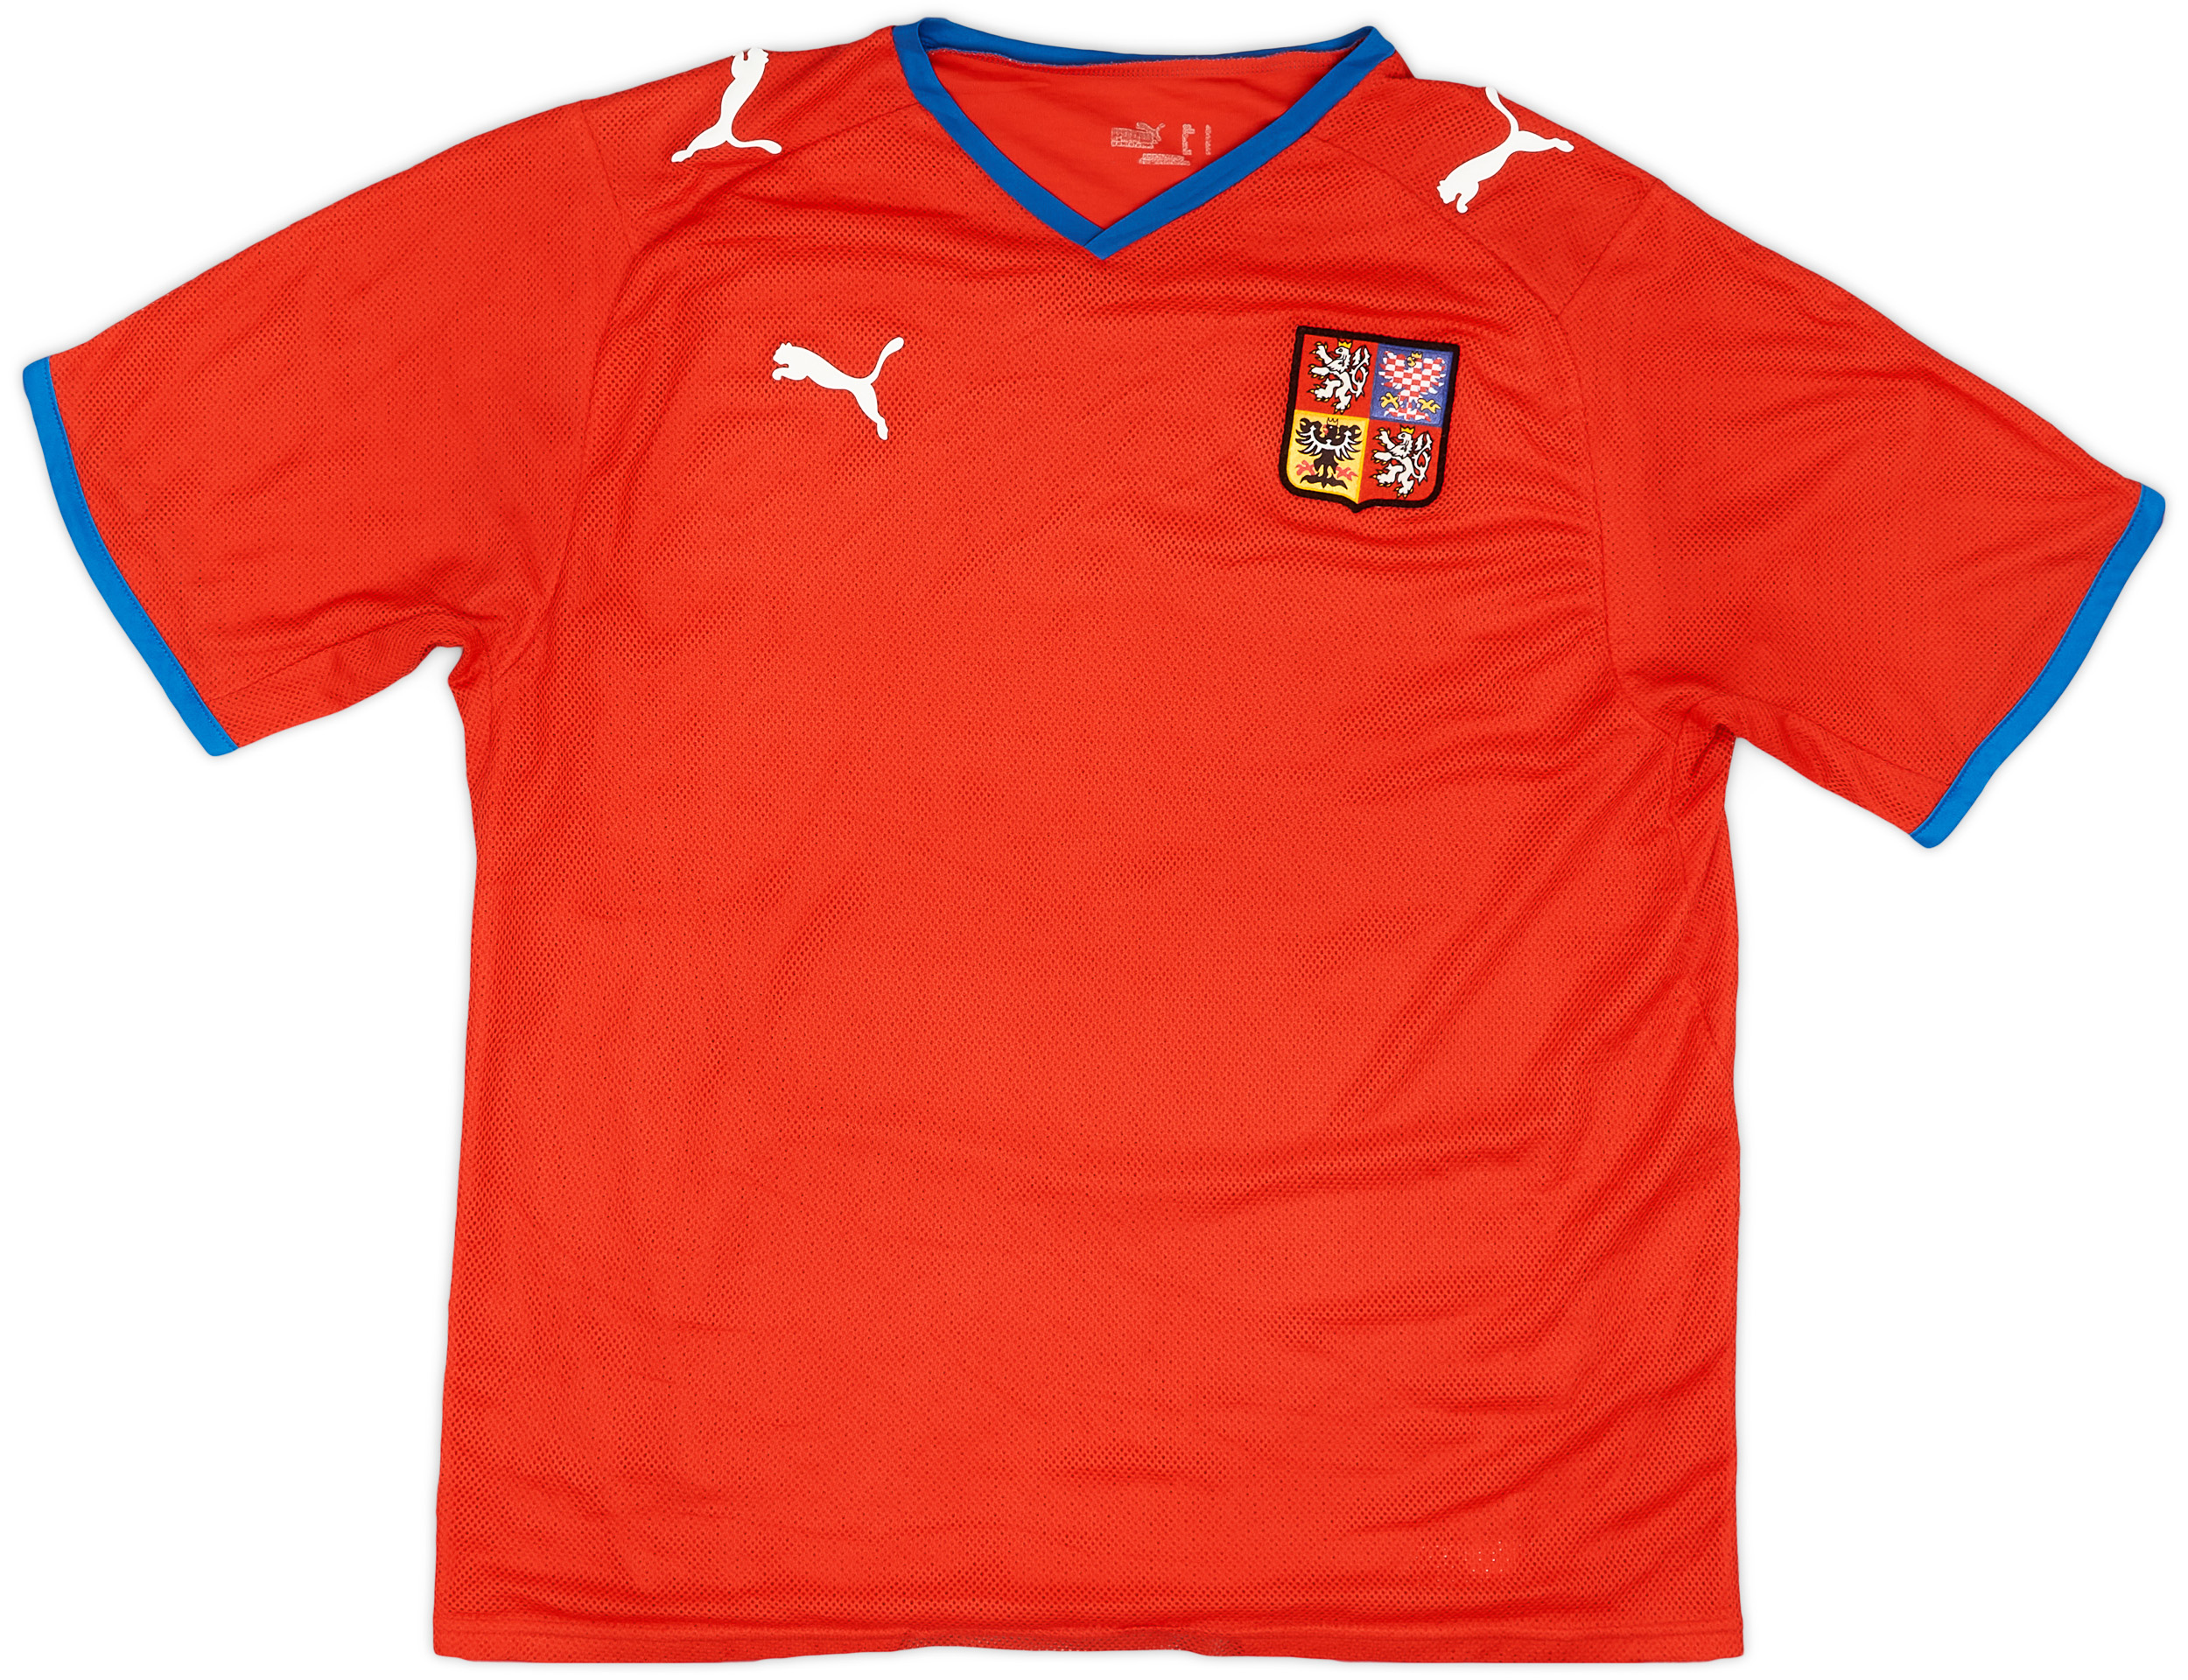 2008-09 Czech Republic Home Shirt - 9/10 - ()